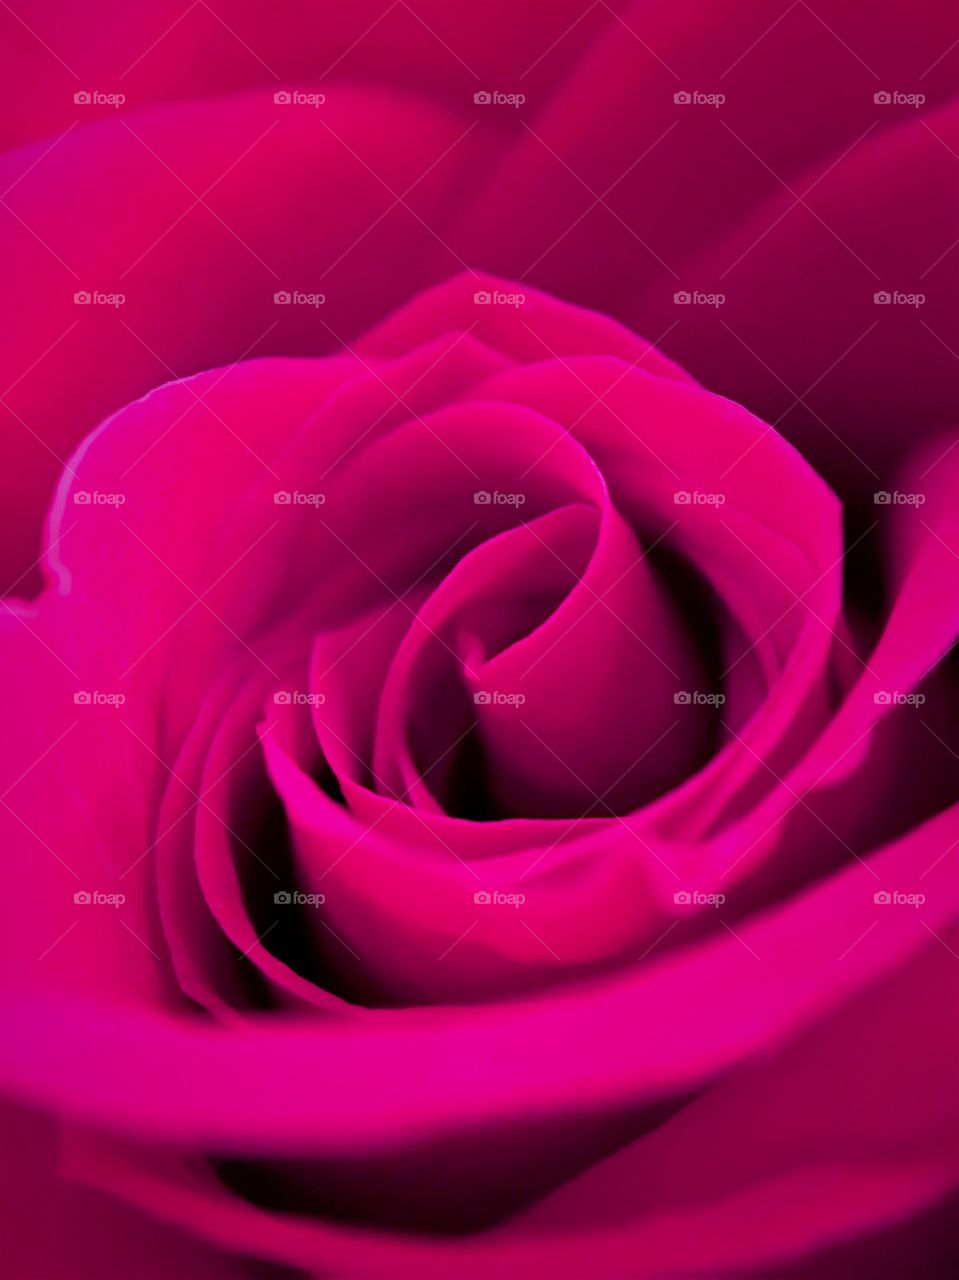 Full frame of pink rose